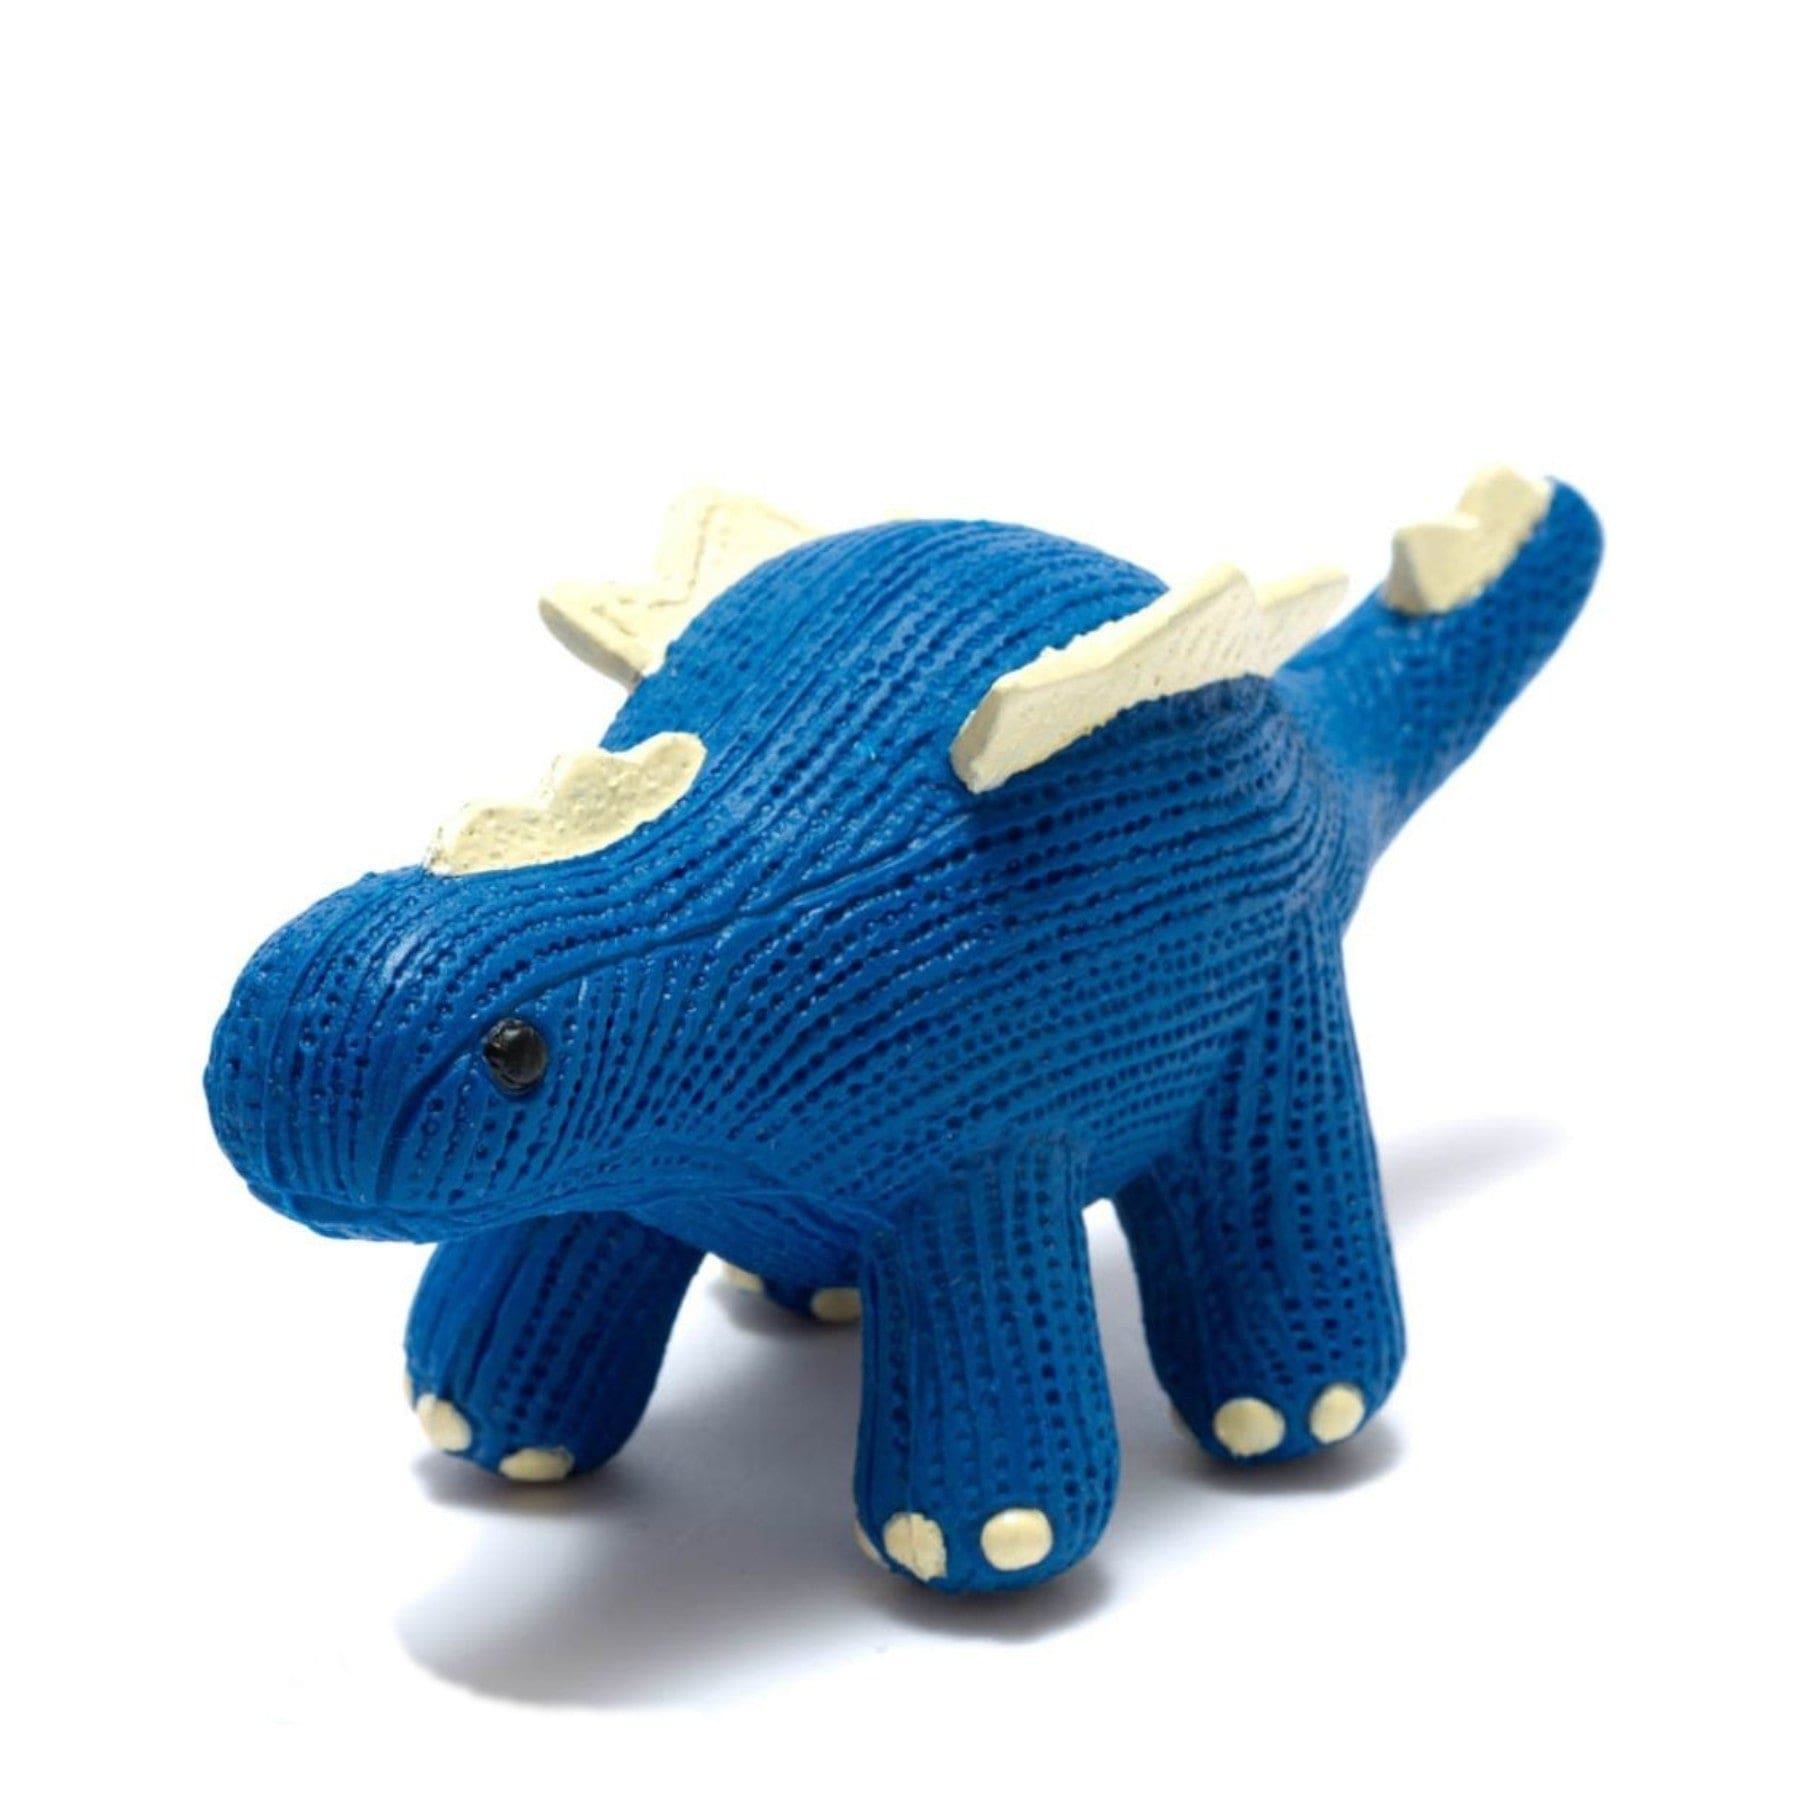 Blue knitted stegosaurus dinosaur toy isolated on white background